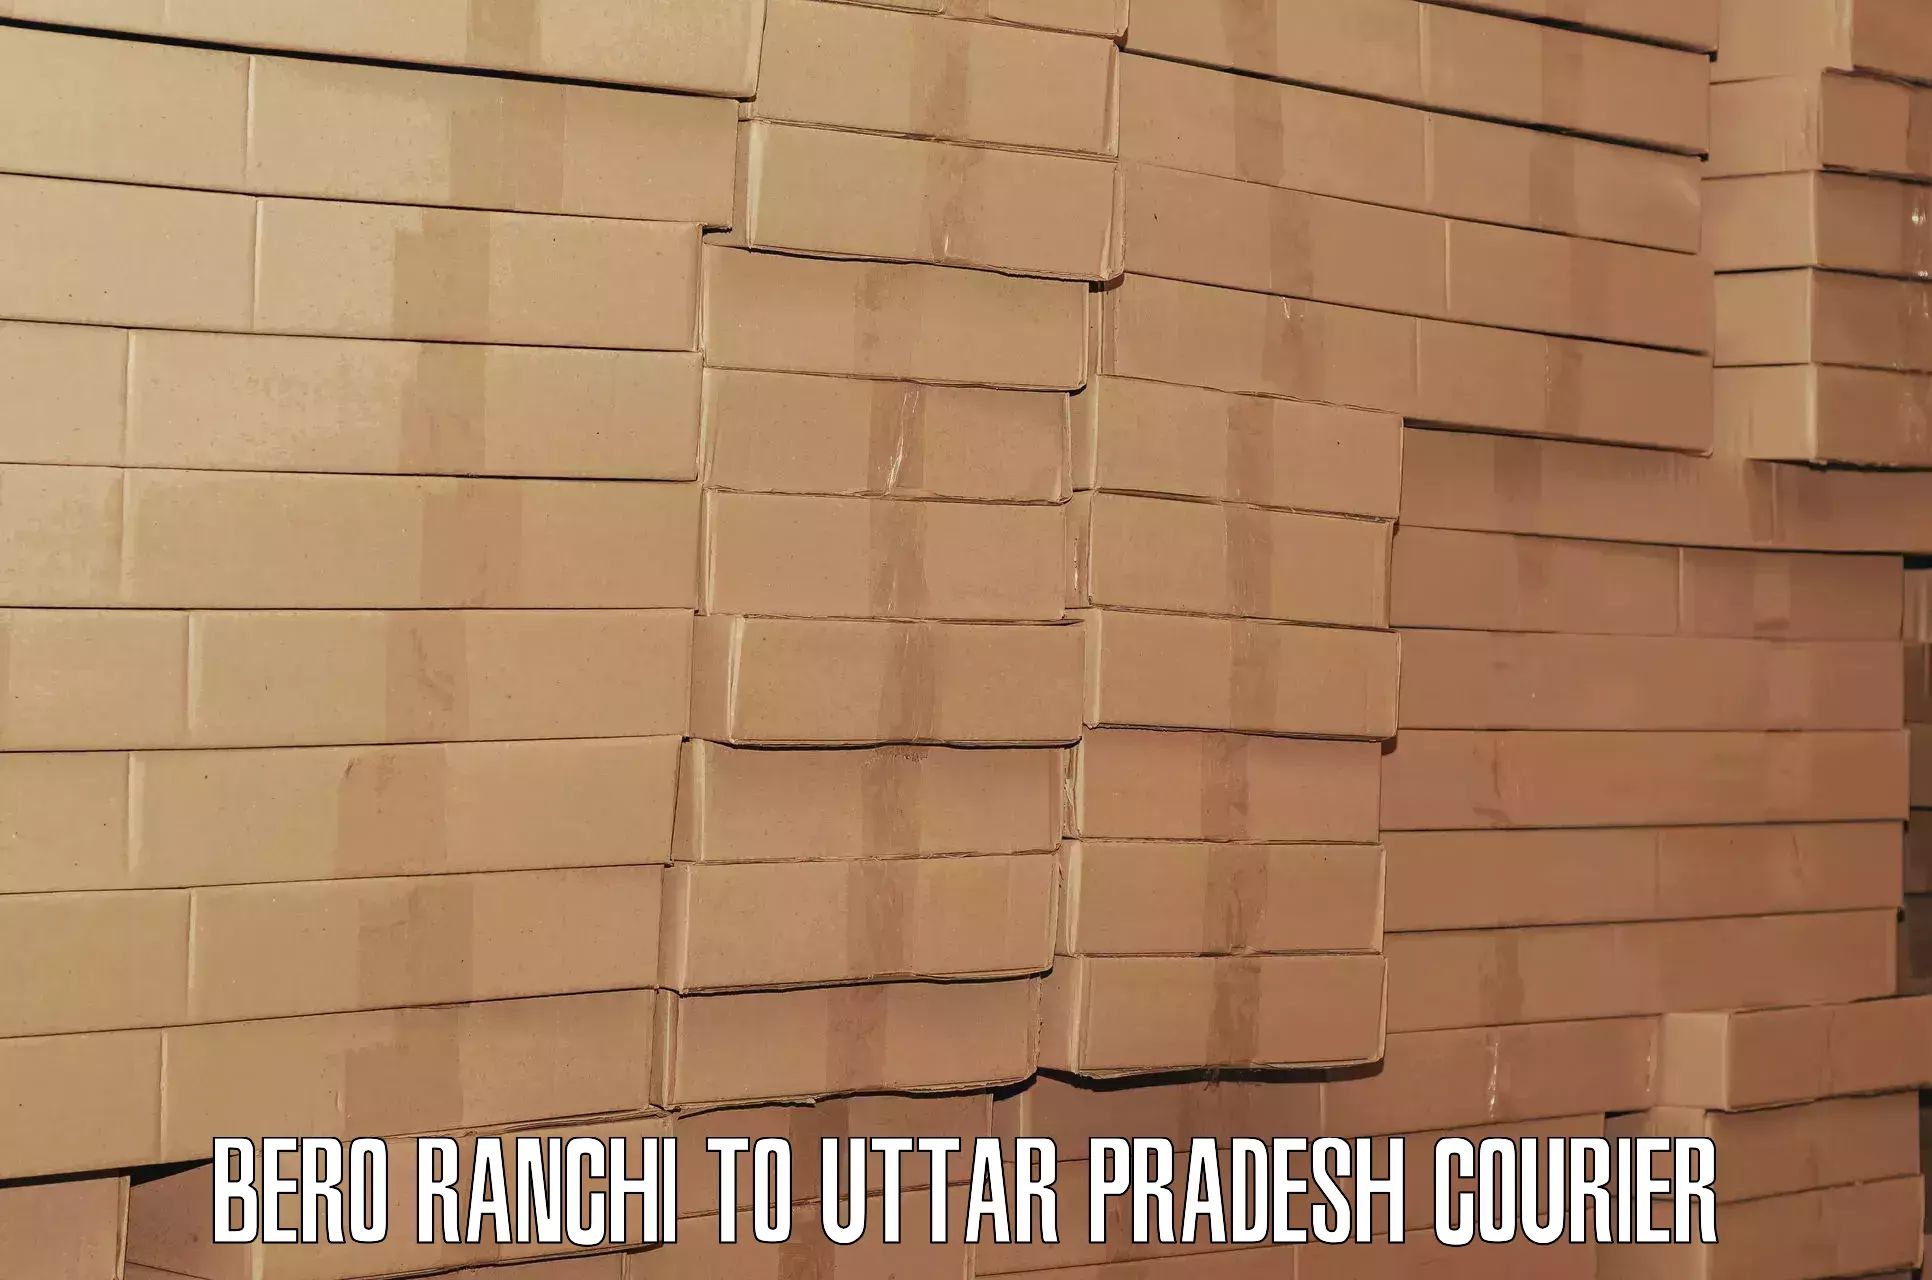 Luggage shipment tracking Bero Ranchi to Uttar Pradesh